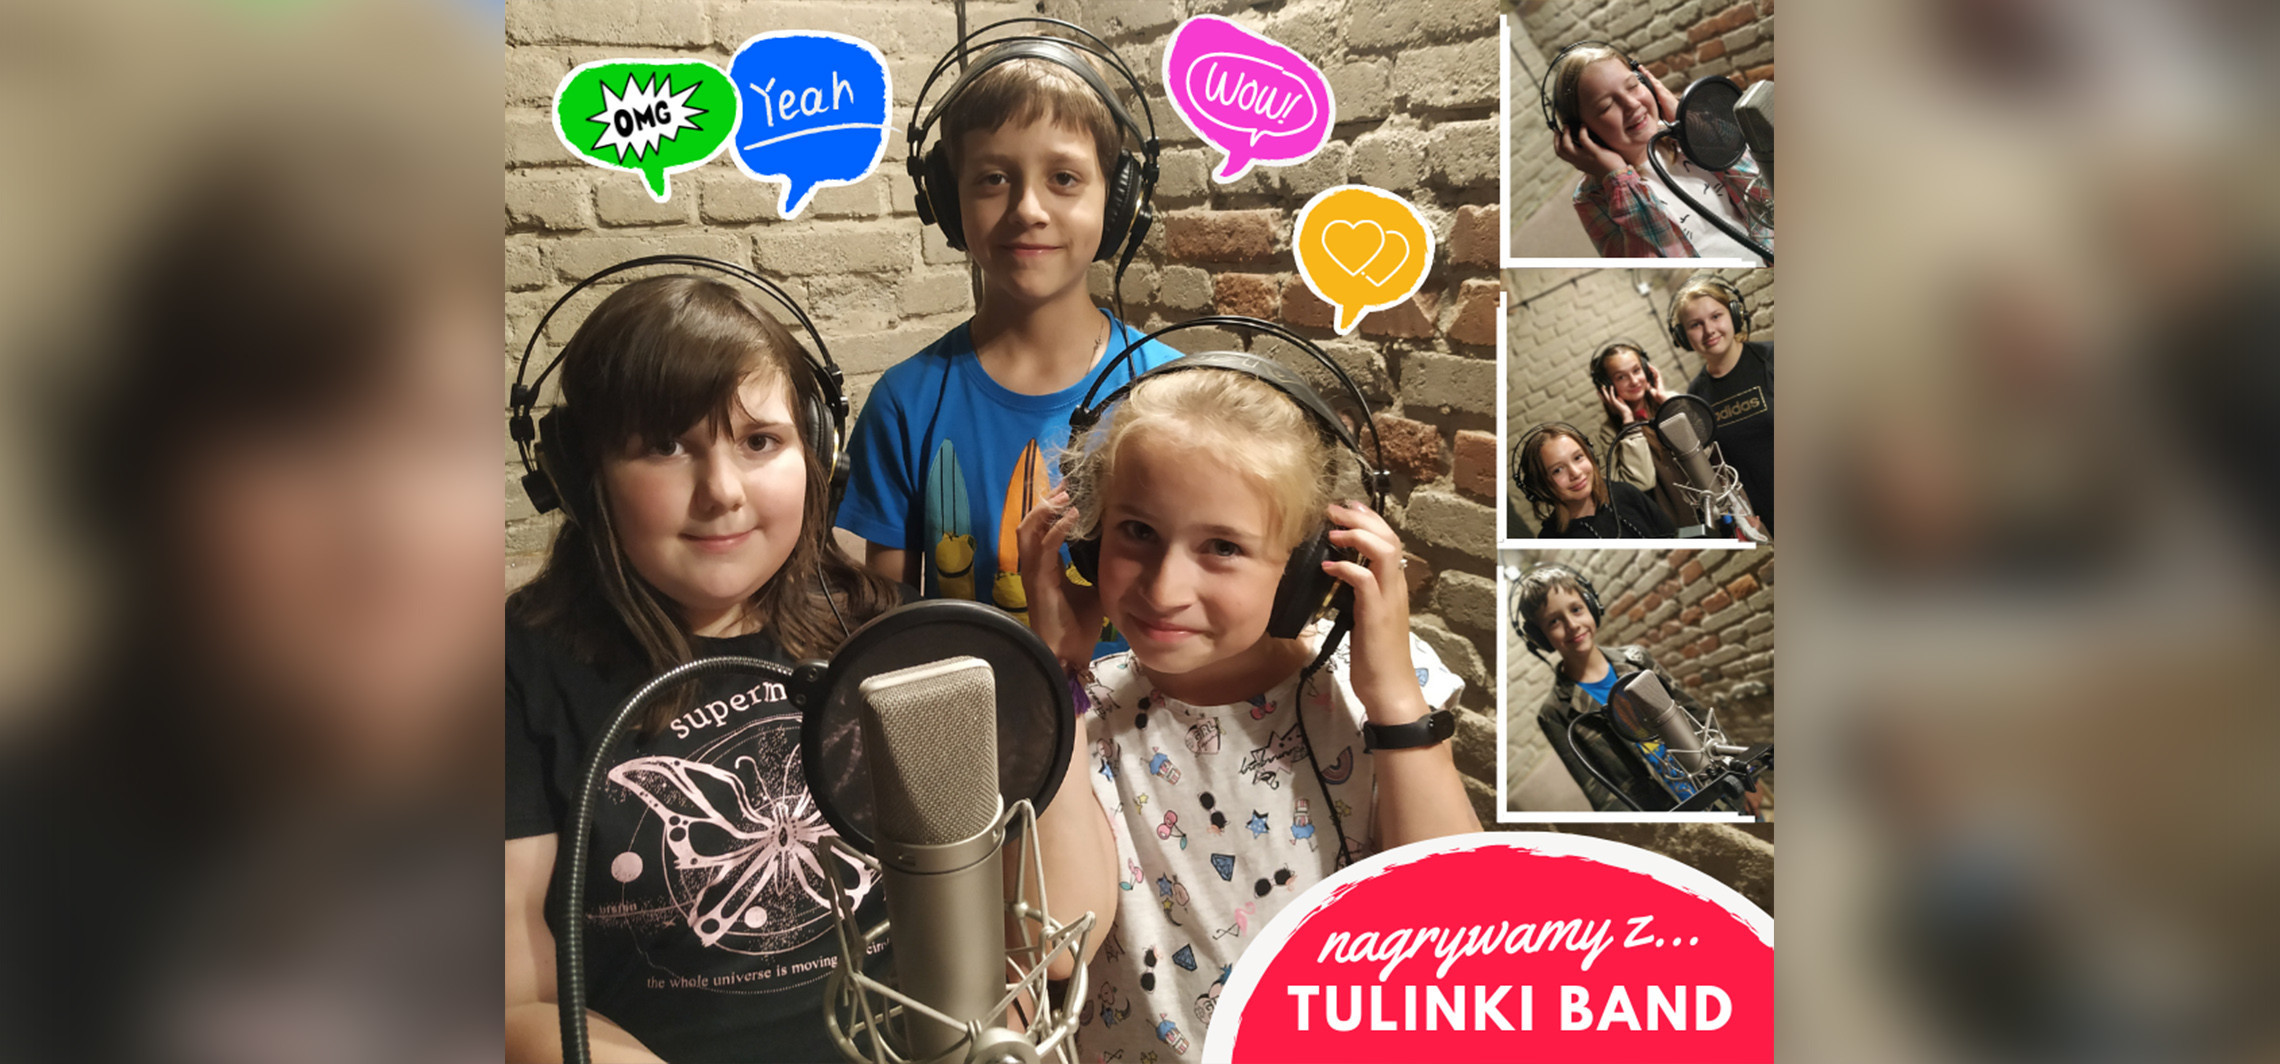 Inowrocław - Dzieci z Inowrocławia nagrały piosenkę z Tulinki Band